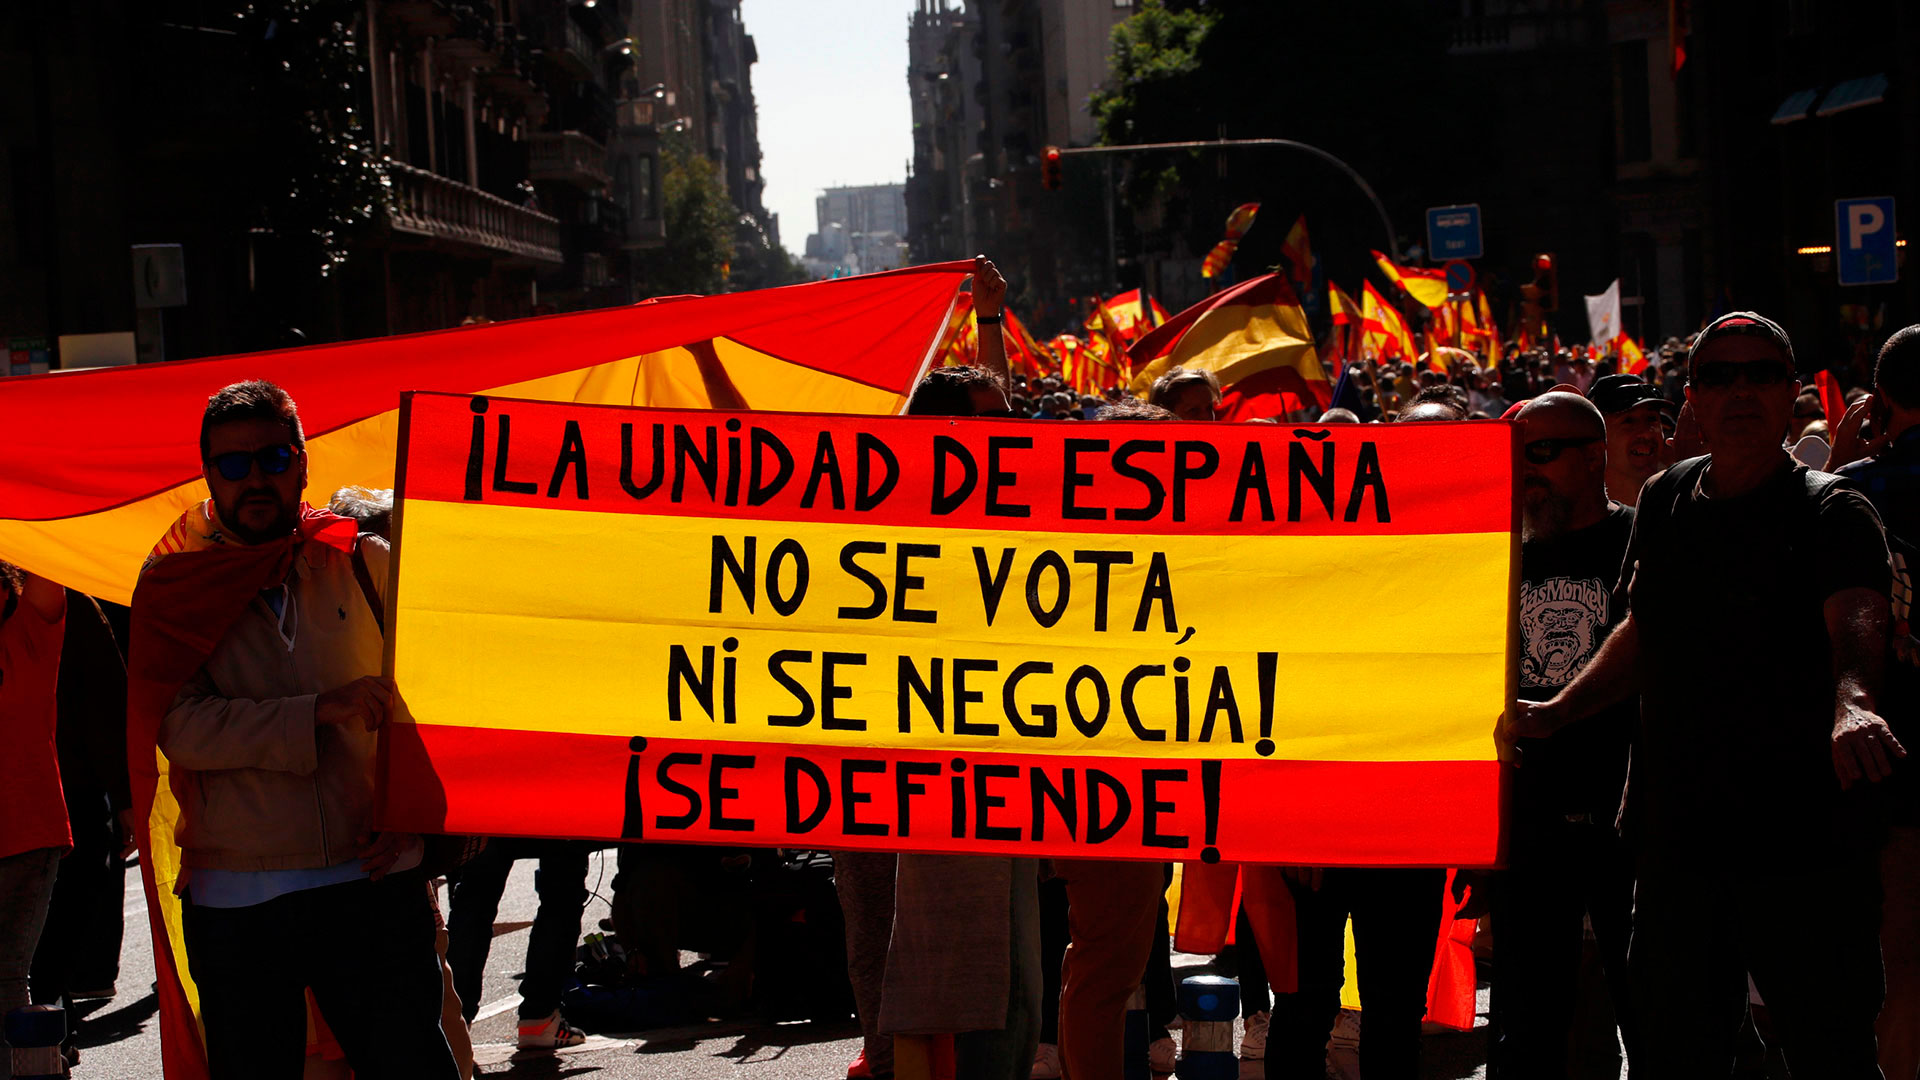 La manifestación a favor de la unidad de España en Barcelona, en imágenes 3